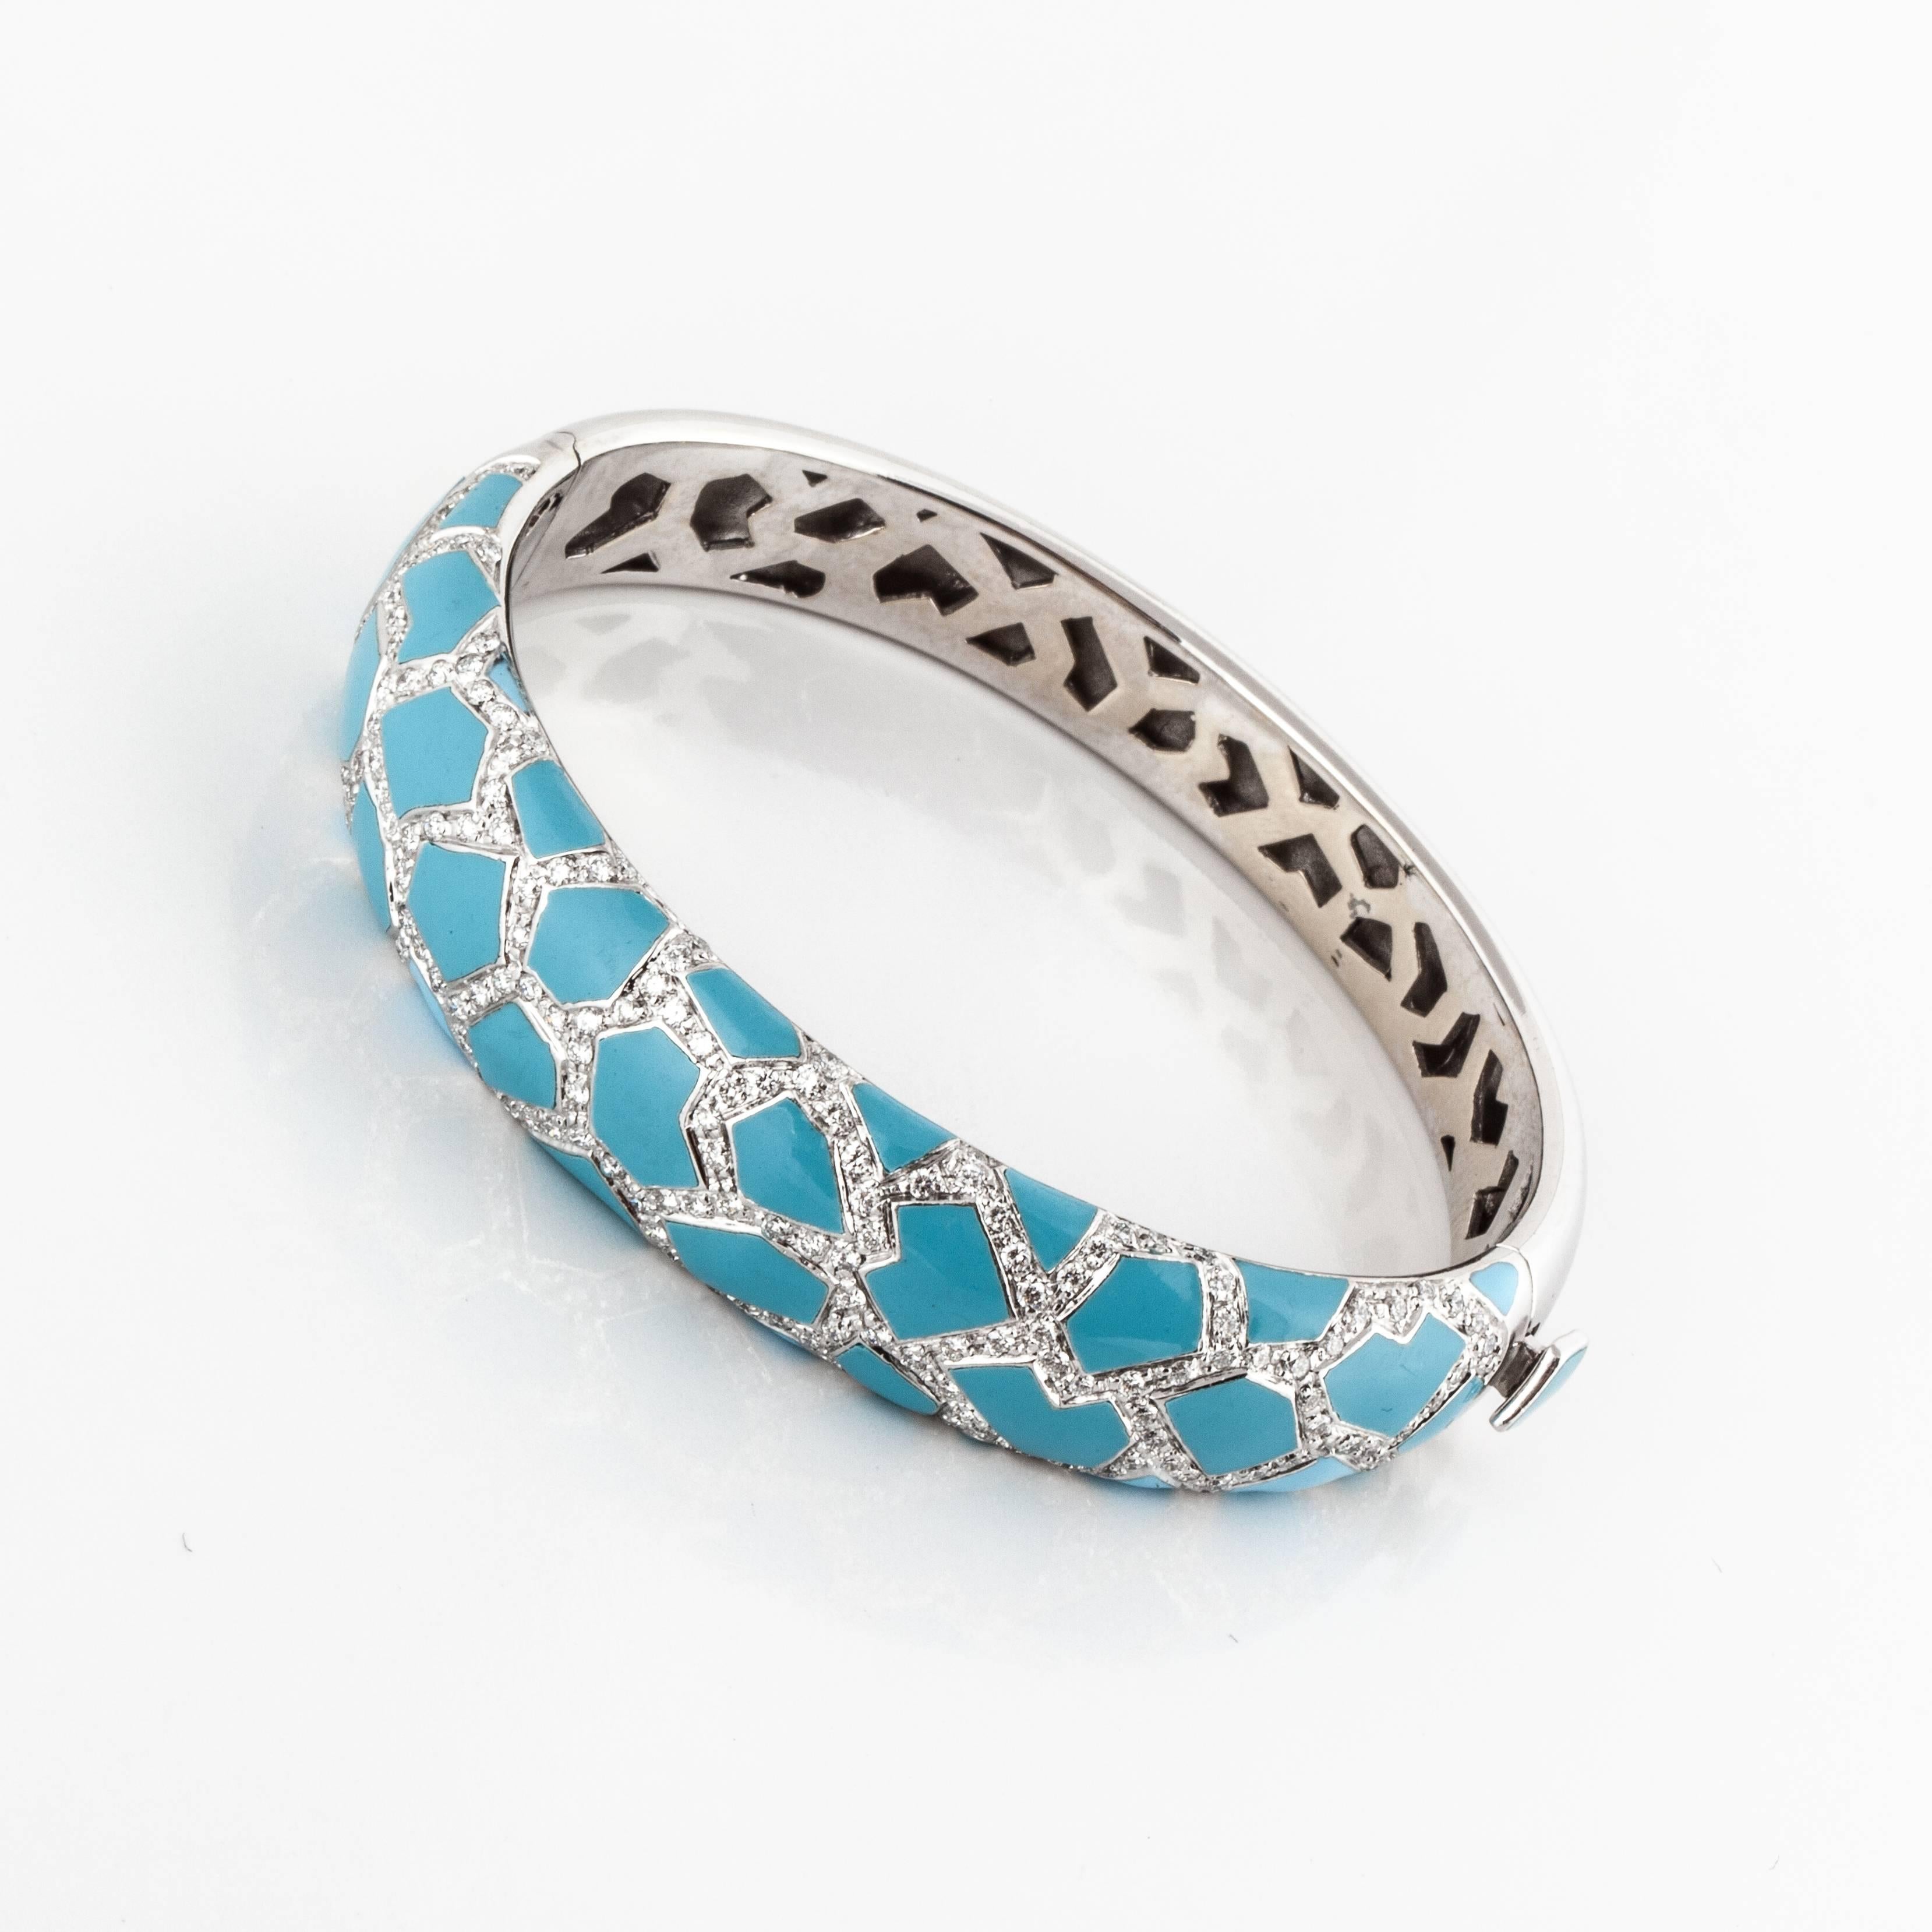 Light blue enamel white gold bracelet marked 